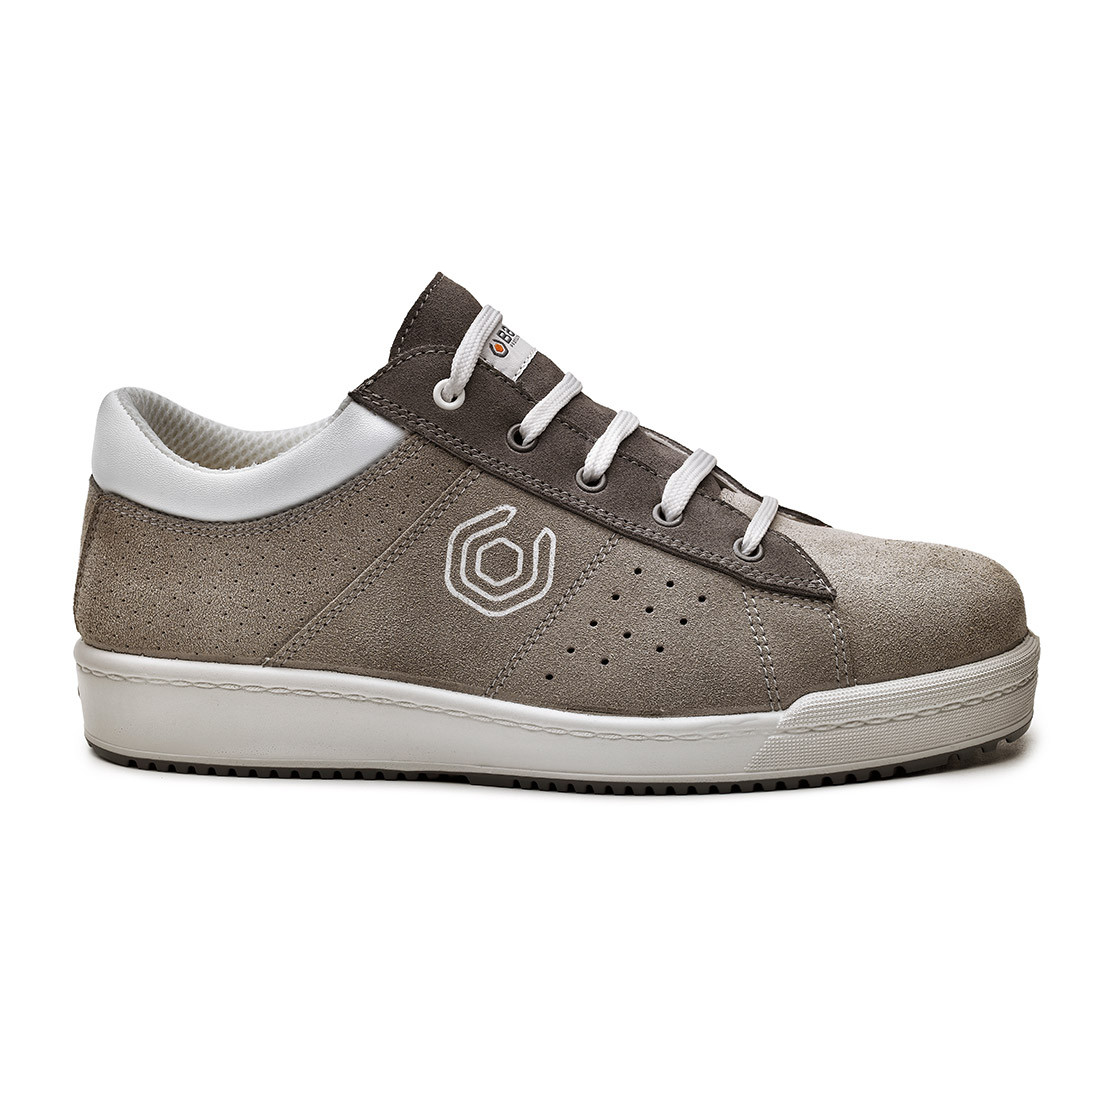 Pantofi Pixel S1P SRC - Incaltaminte de protectie | Bocanci, Pantofi, Sandale, Cizme